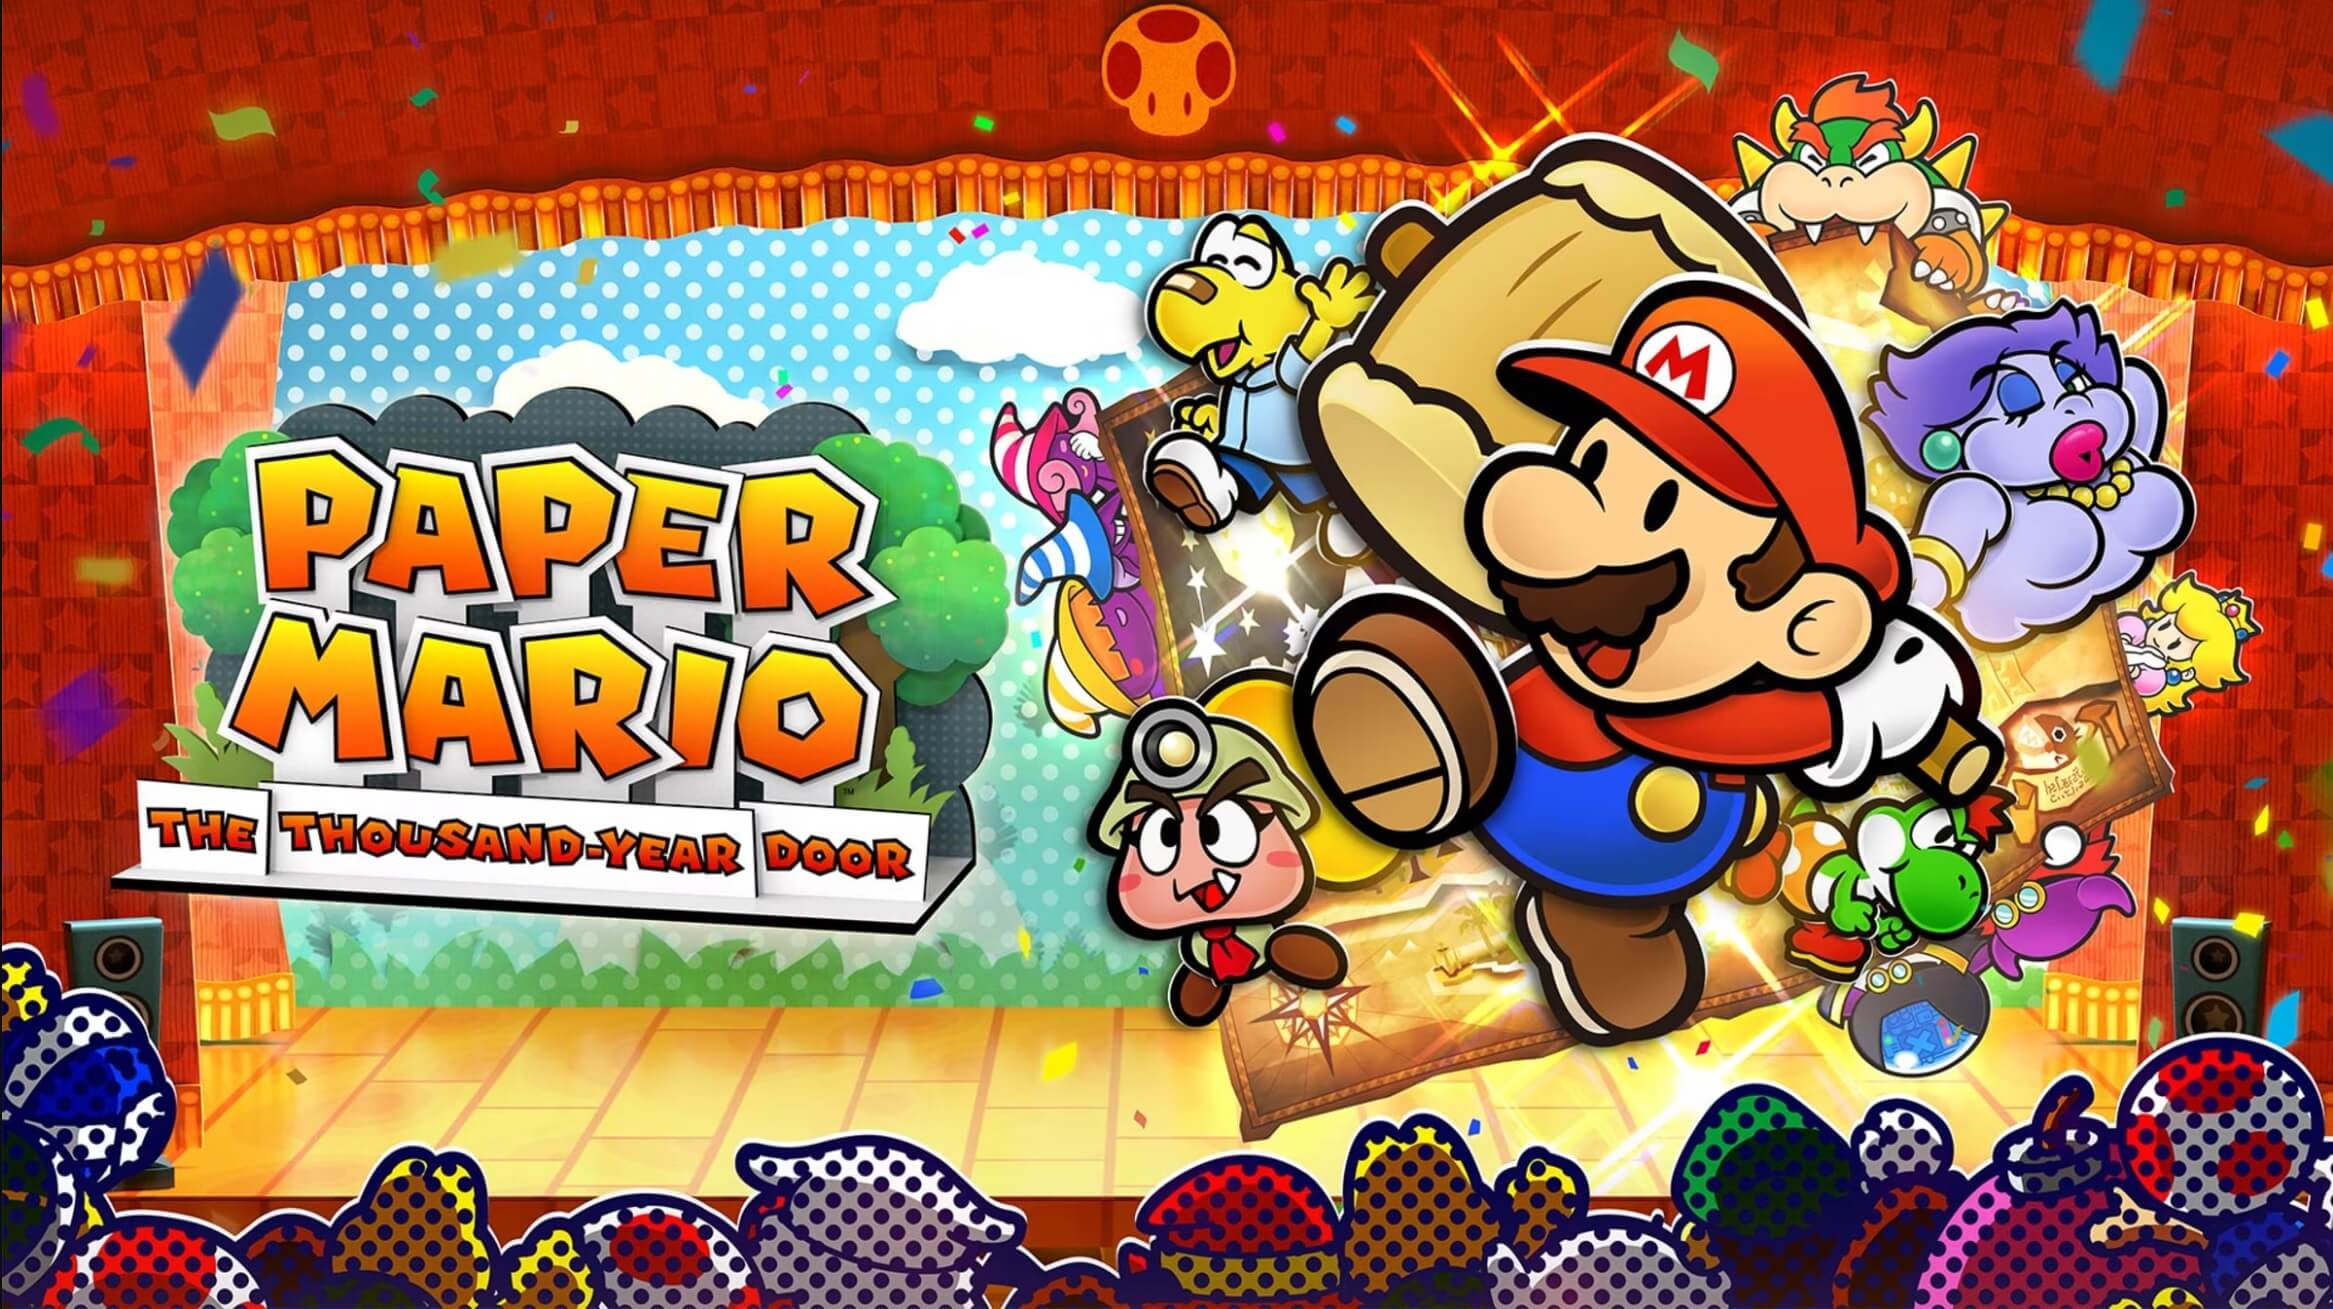 В Paper Mario: The Thousand-Year Door Remake уже можно играть на ПК со скоростью 60 кадров в секунду через эмуляторы Nintendo Switch.